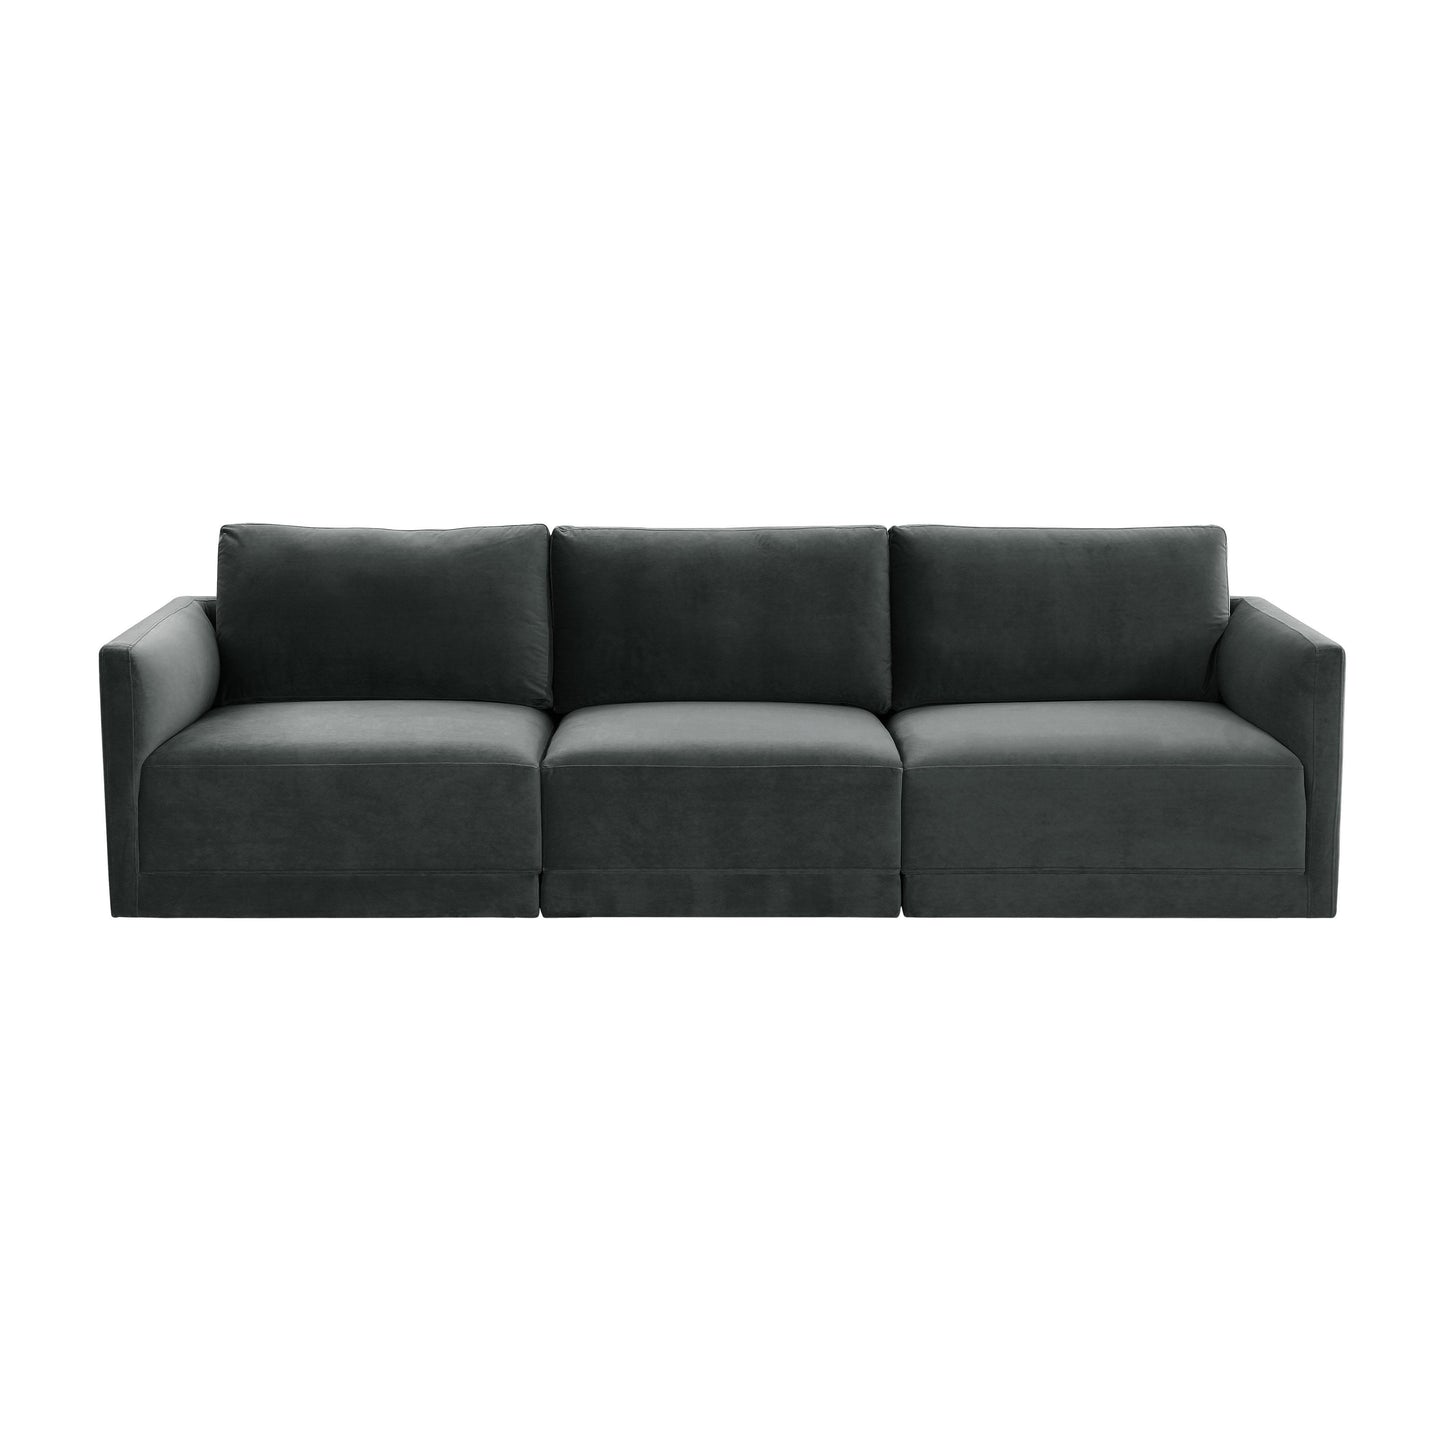 Willow - Modular Sofa